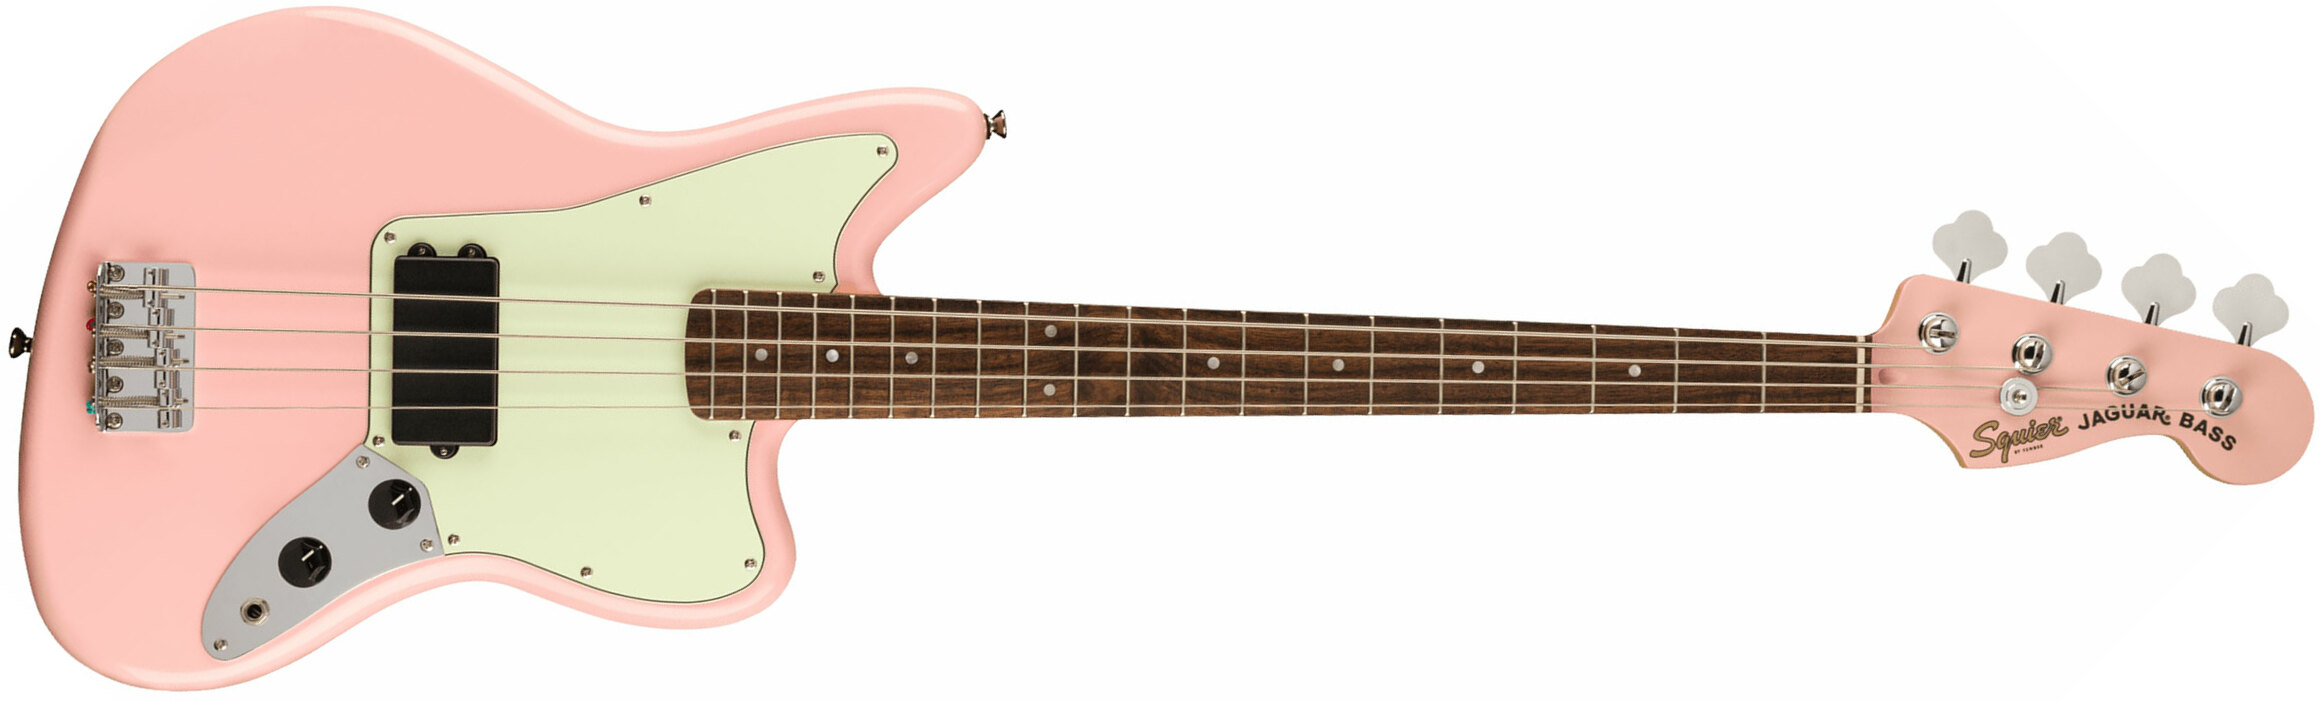 Squier Jaguar Bass H Affinity Fsr Lau - Shell Pink - Bajo eléctrico de cuerpo sólido - Main picture